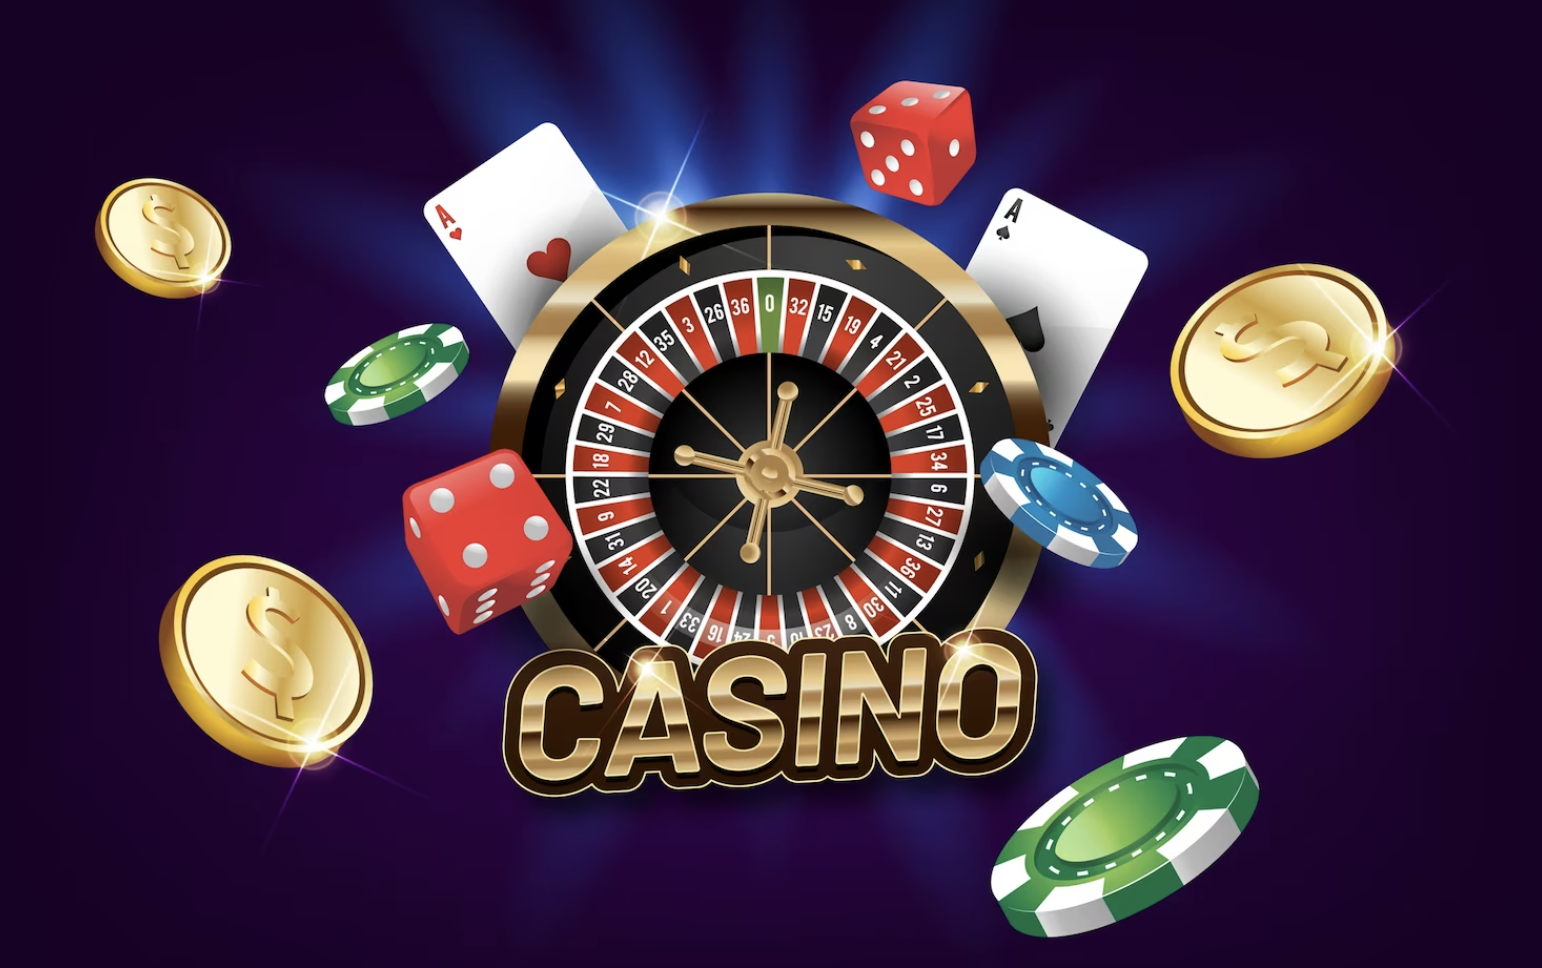 vilket online casino har den snabbaste uttagstiden_3